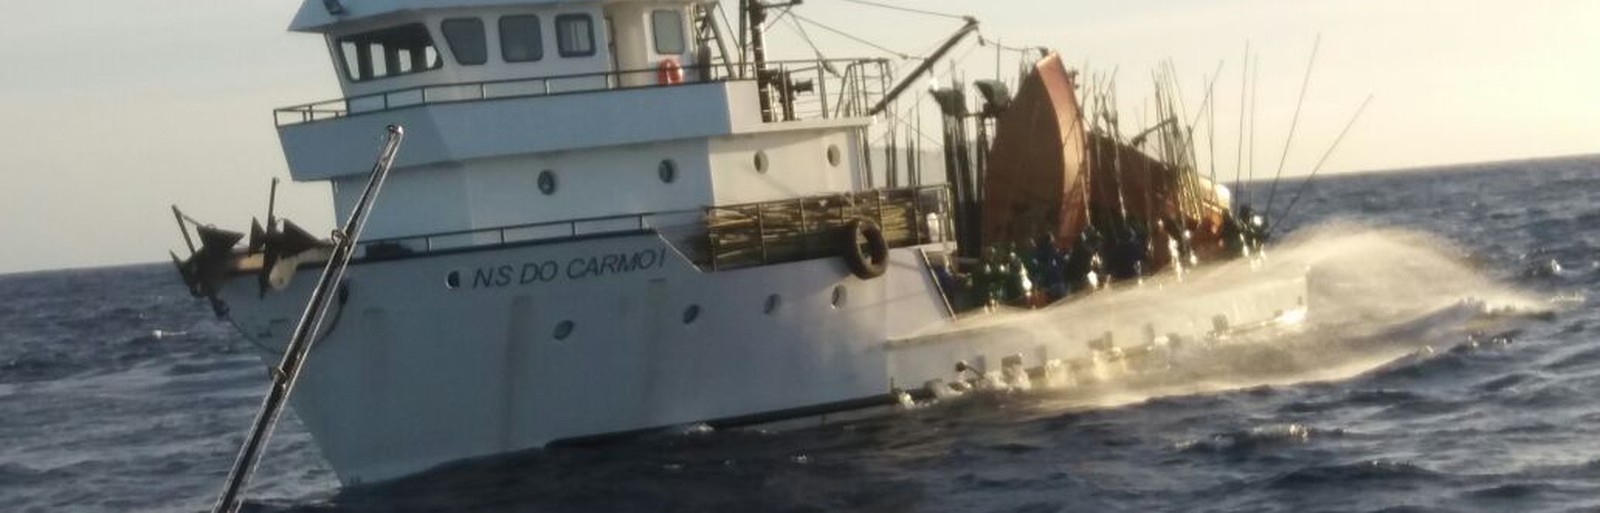 barco pesqueiro N S do Carmo I, que naufragou no litoral de Angra dos Reis. Foto: reprodução/ Internet.